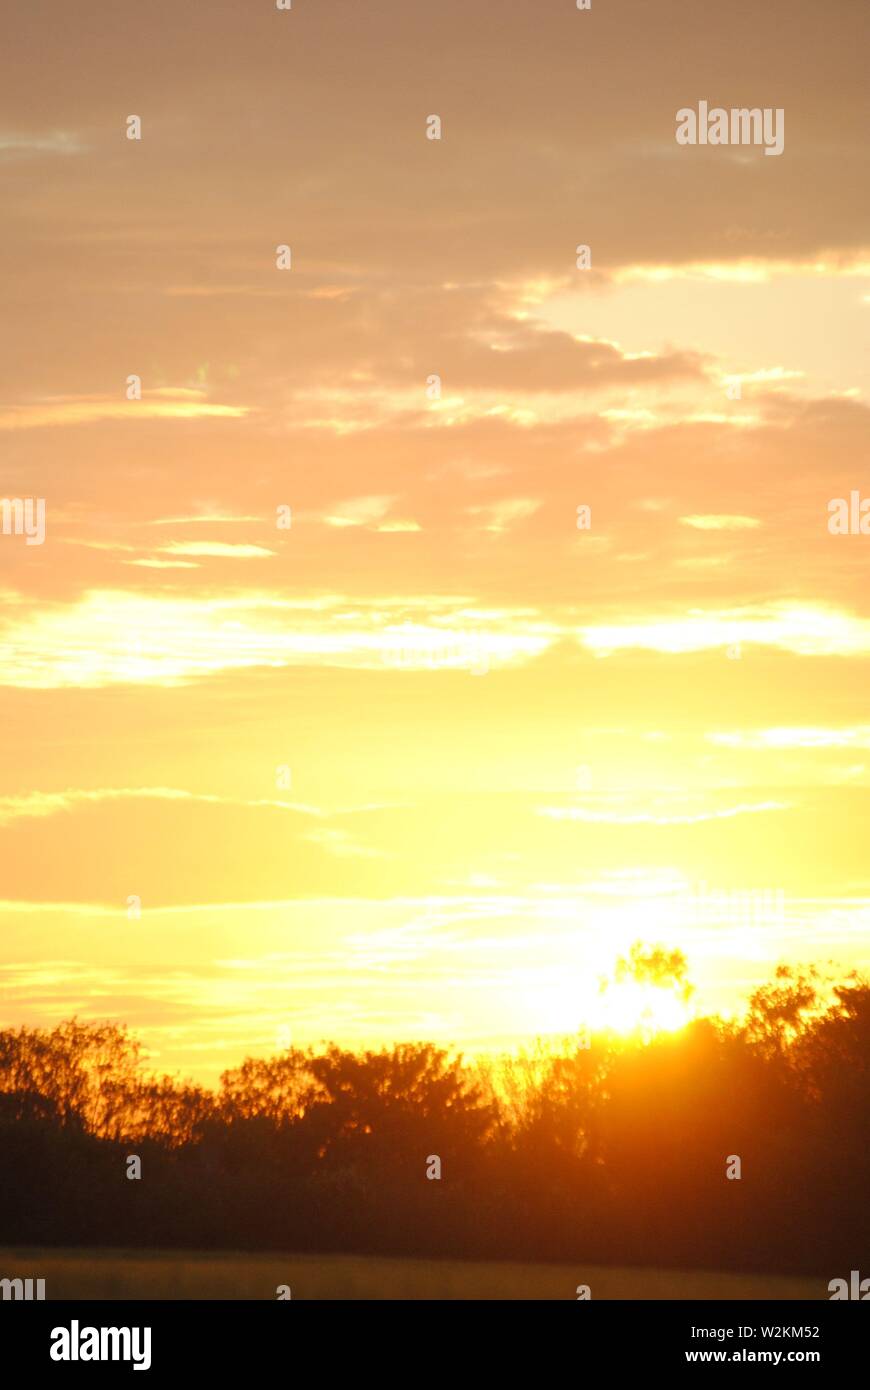 Sonnenuntergangssequenz goldener Glanz mit vielen Wolken mit Baumsilhouetten Stockfoto